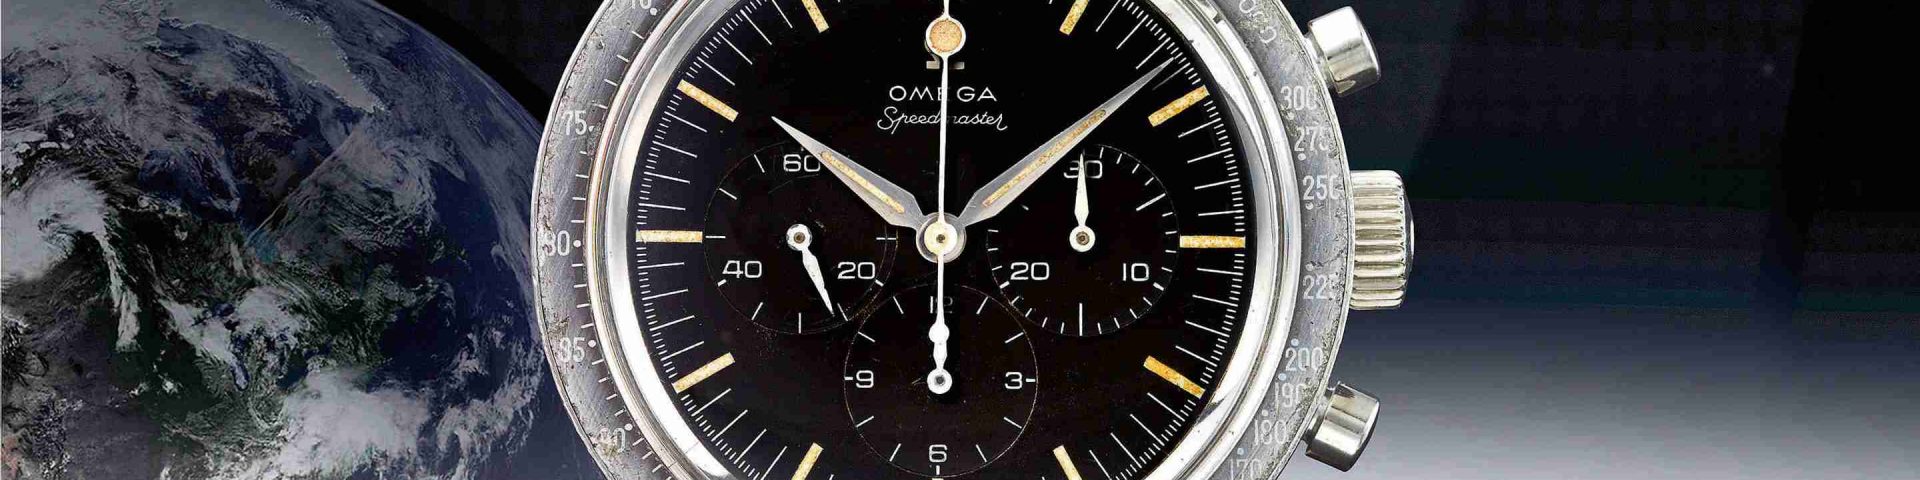 Mondlandung und der Replica Uhren Omega Speedmaster Broad Arrow